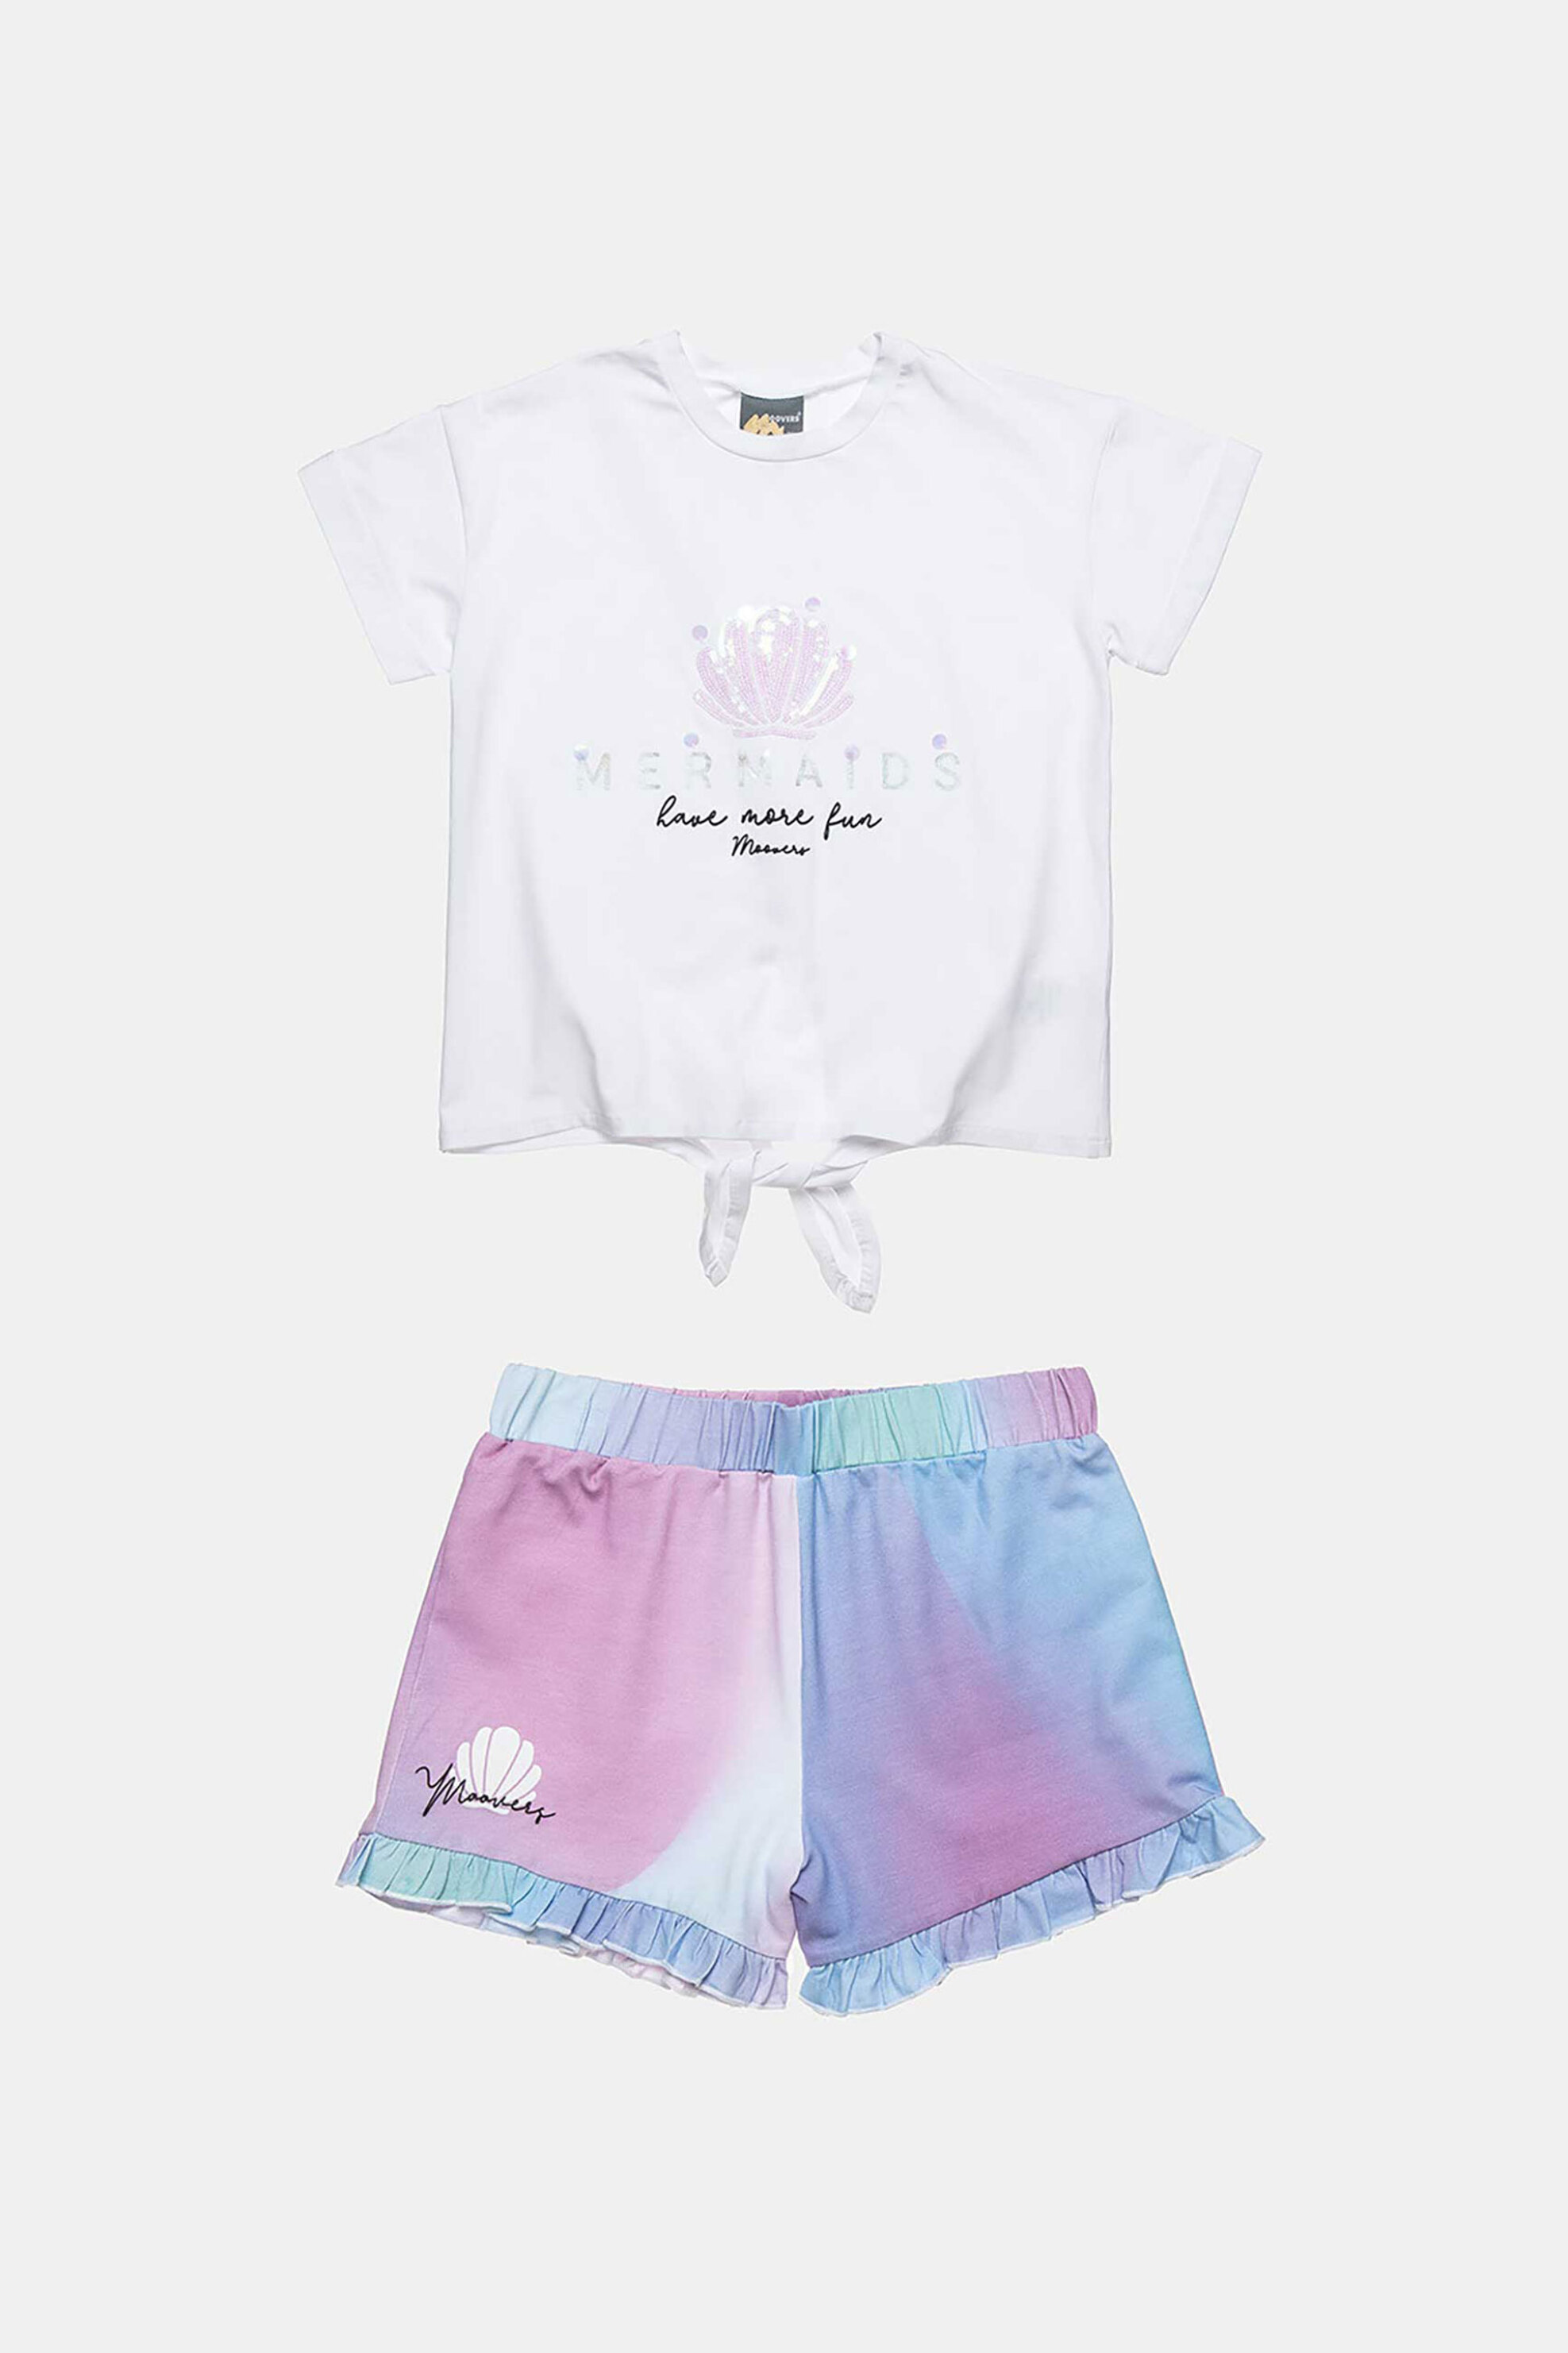 Alouette παιδικό σετ ρούχων με T-shirt και σορτς με tie dye effect 